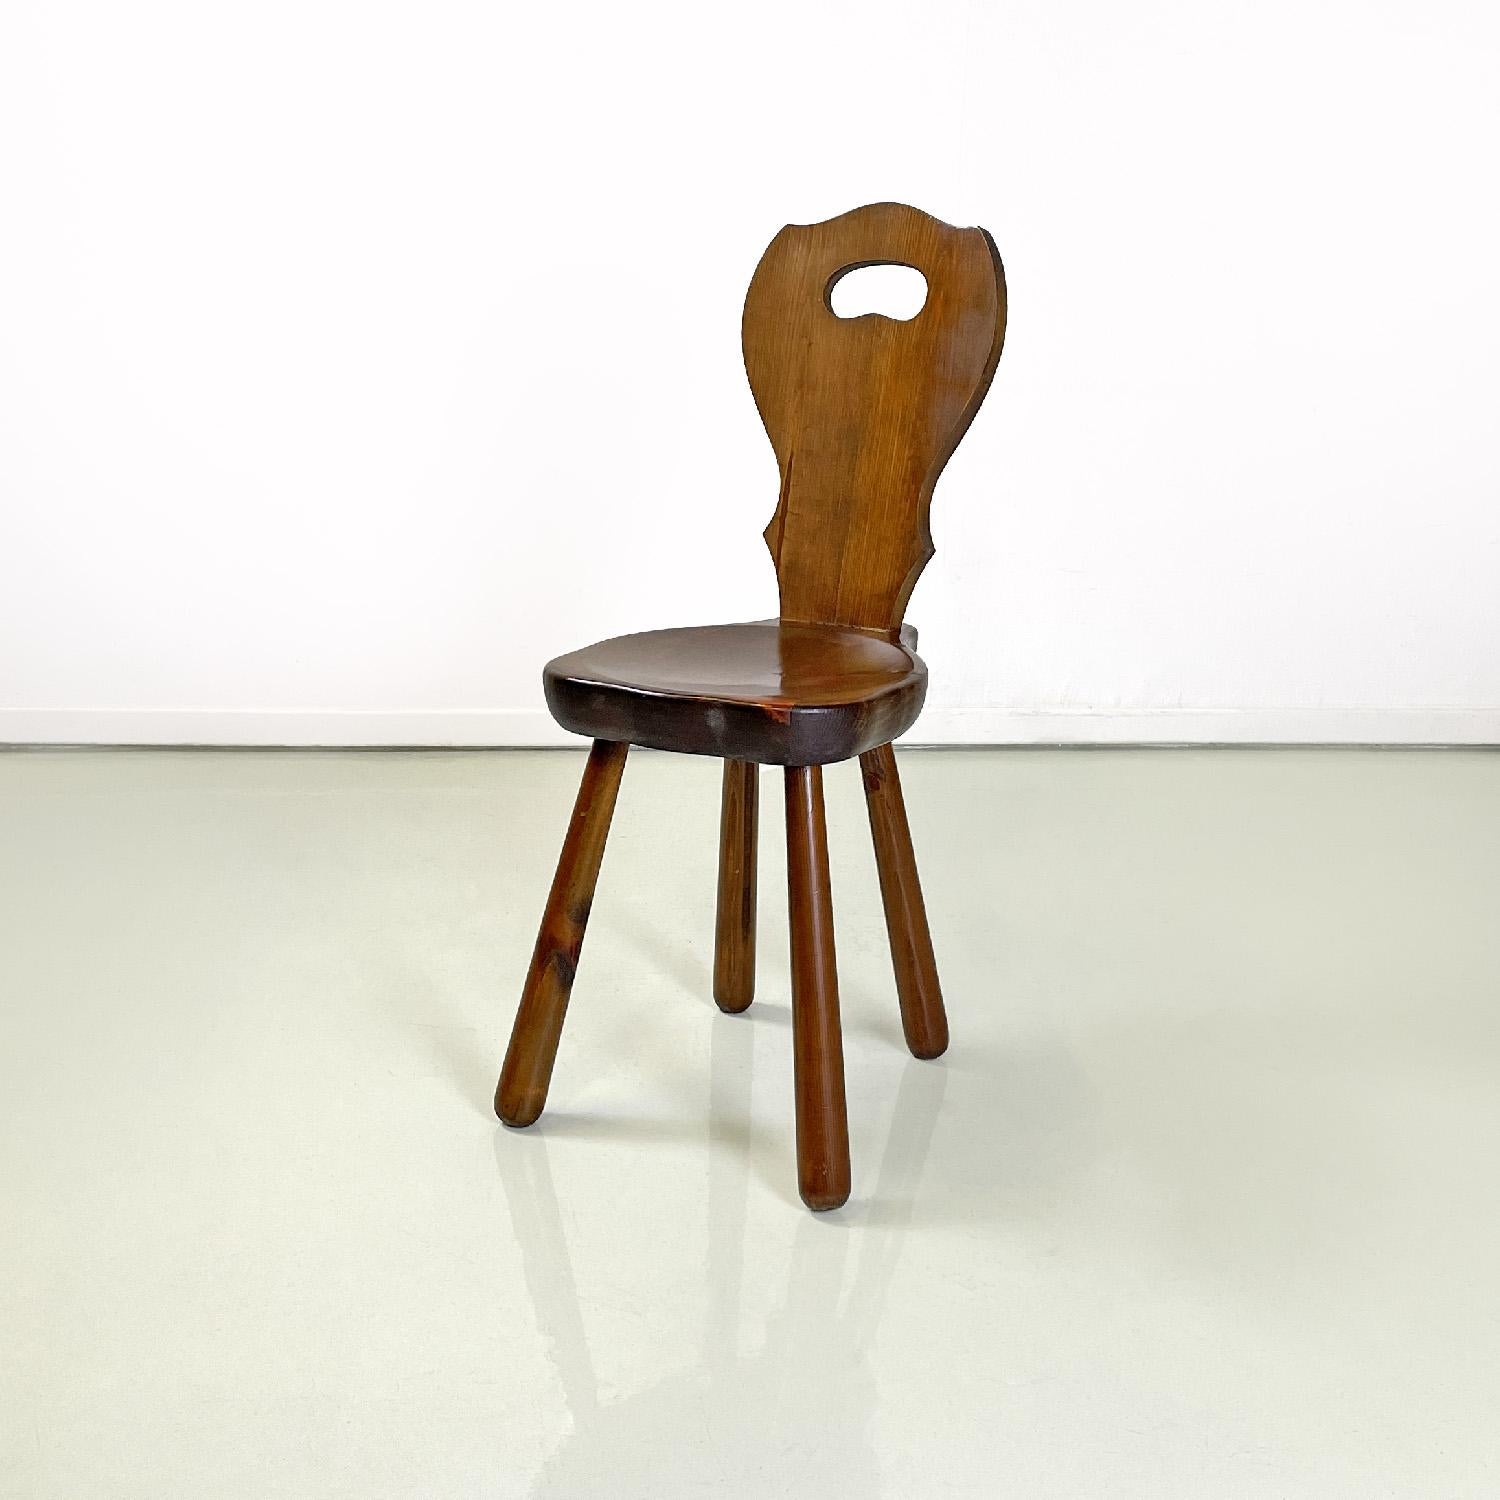 Chaise en bois Art déco italienne avec profils arrondis, années 1940
Chaise en bois de style Art déco avec assise arrondie légèrement profilée. Le dossier a des profils arrondis et pointus pour créer une décoration, dans la partie supérieure il y a